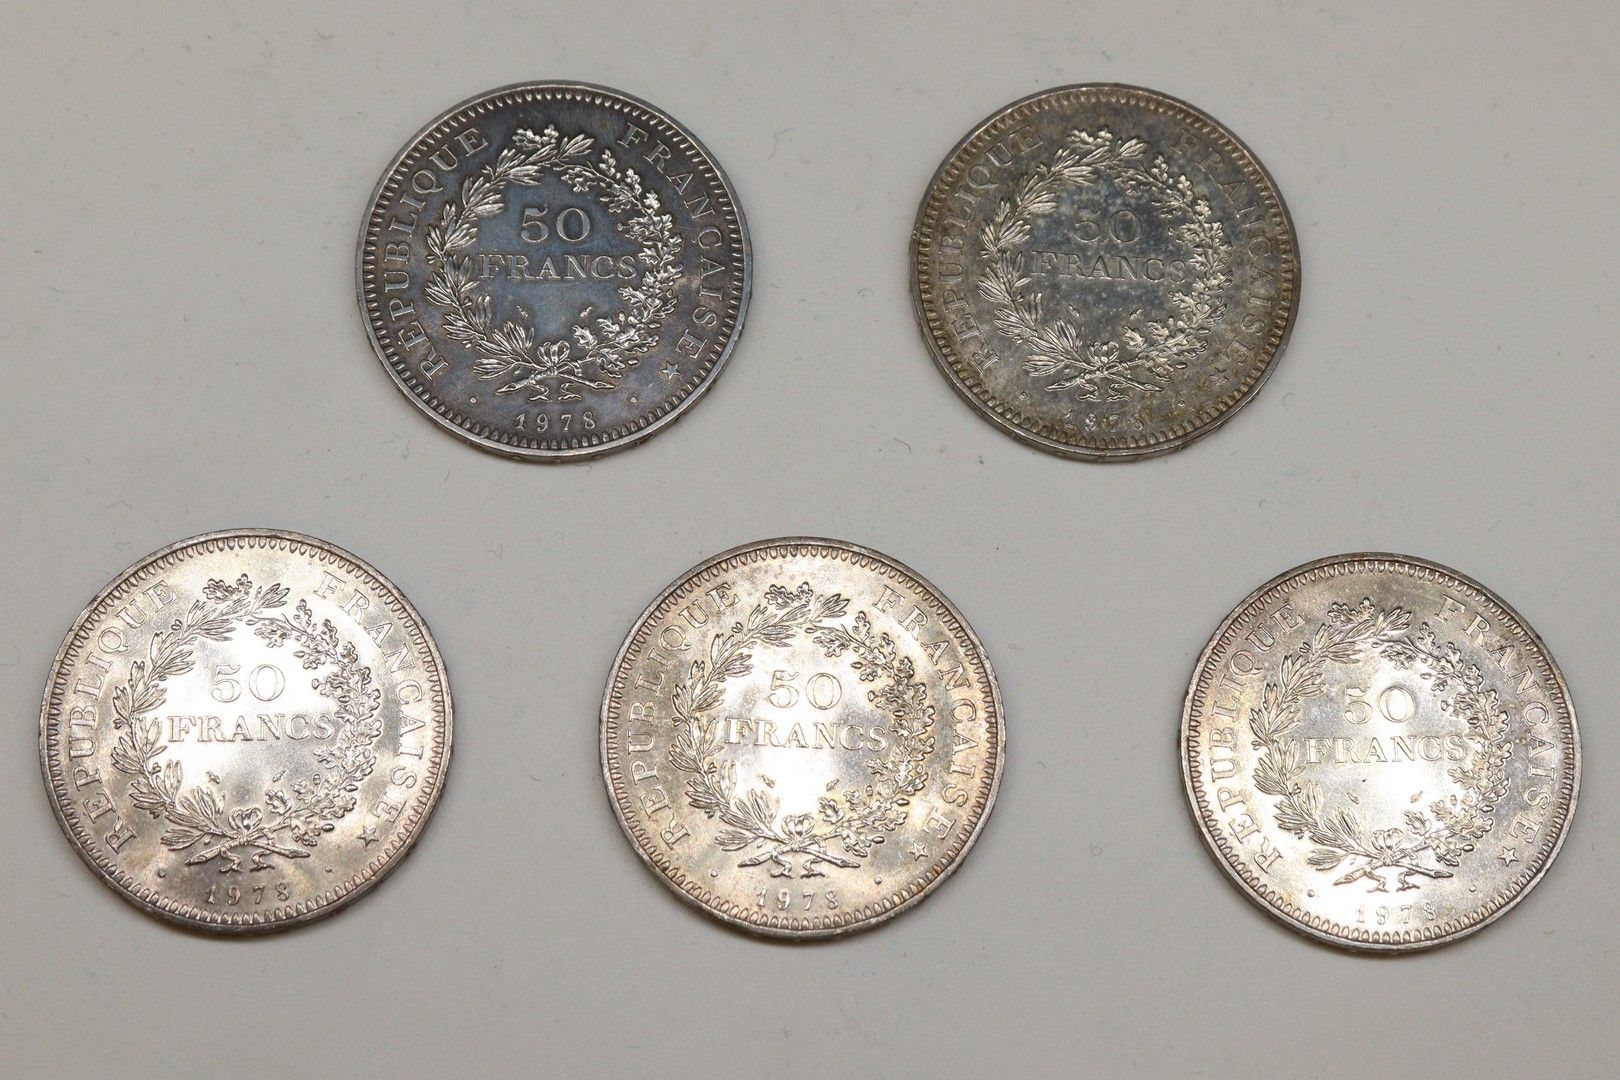 Null Lotto di 5 monete da 50 franchi Ercole (1978)

Da VG a TTB

Peso: 150,04 g.